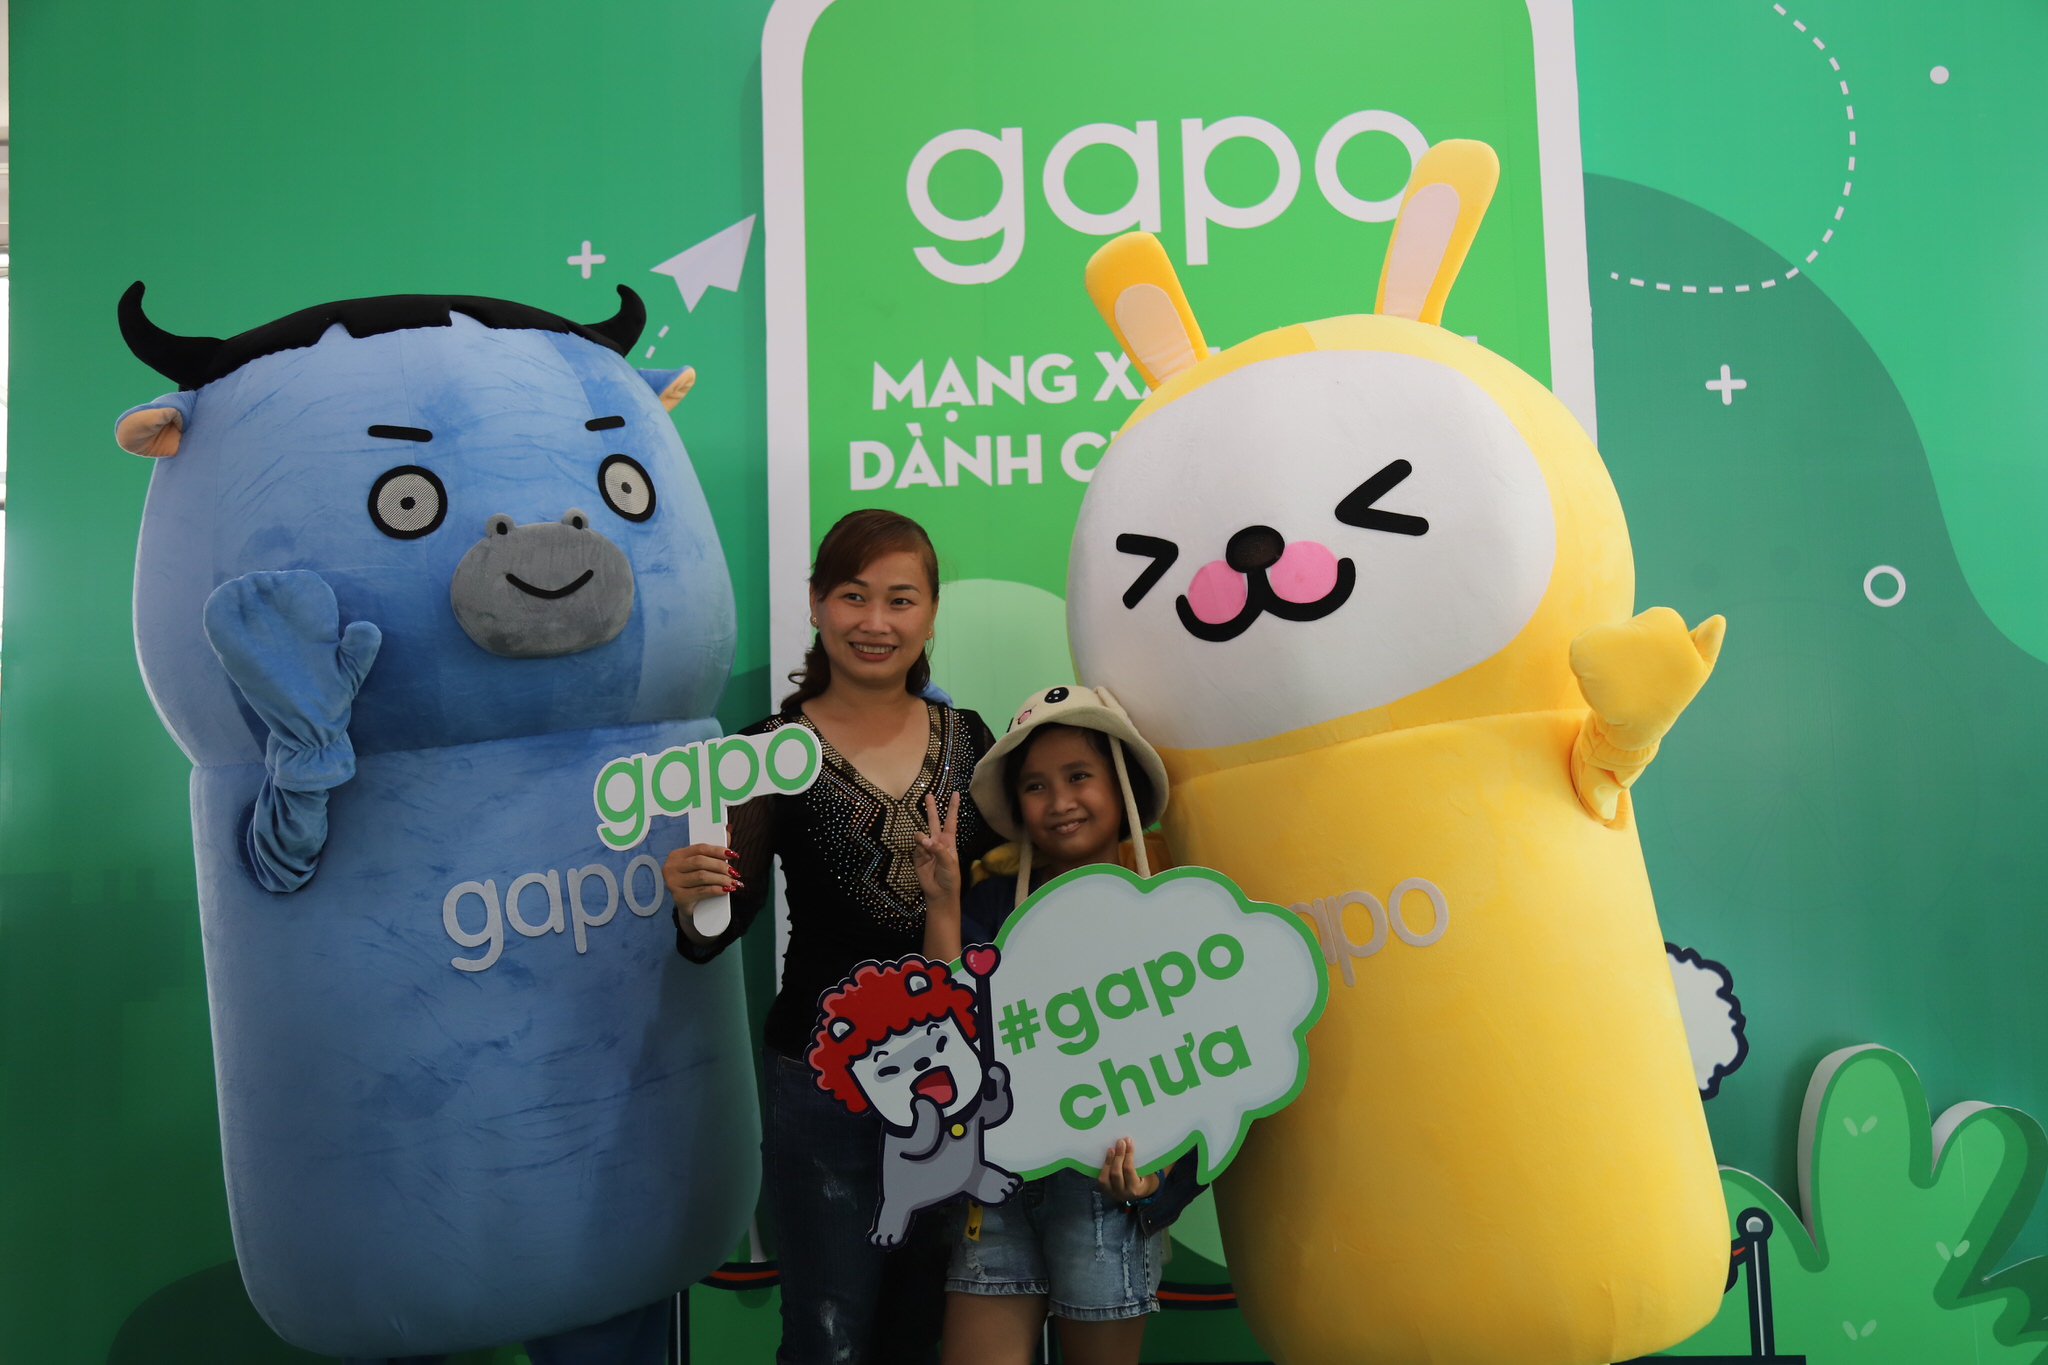 Bắt tay Gapo, Đại hội 360mobi thu hút hơn 70,000 lượt game thủ xếp hàng nhận "đặc quyền kép" từ Gapo